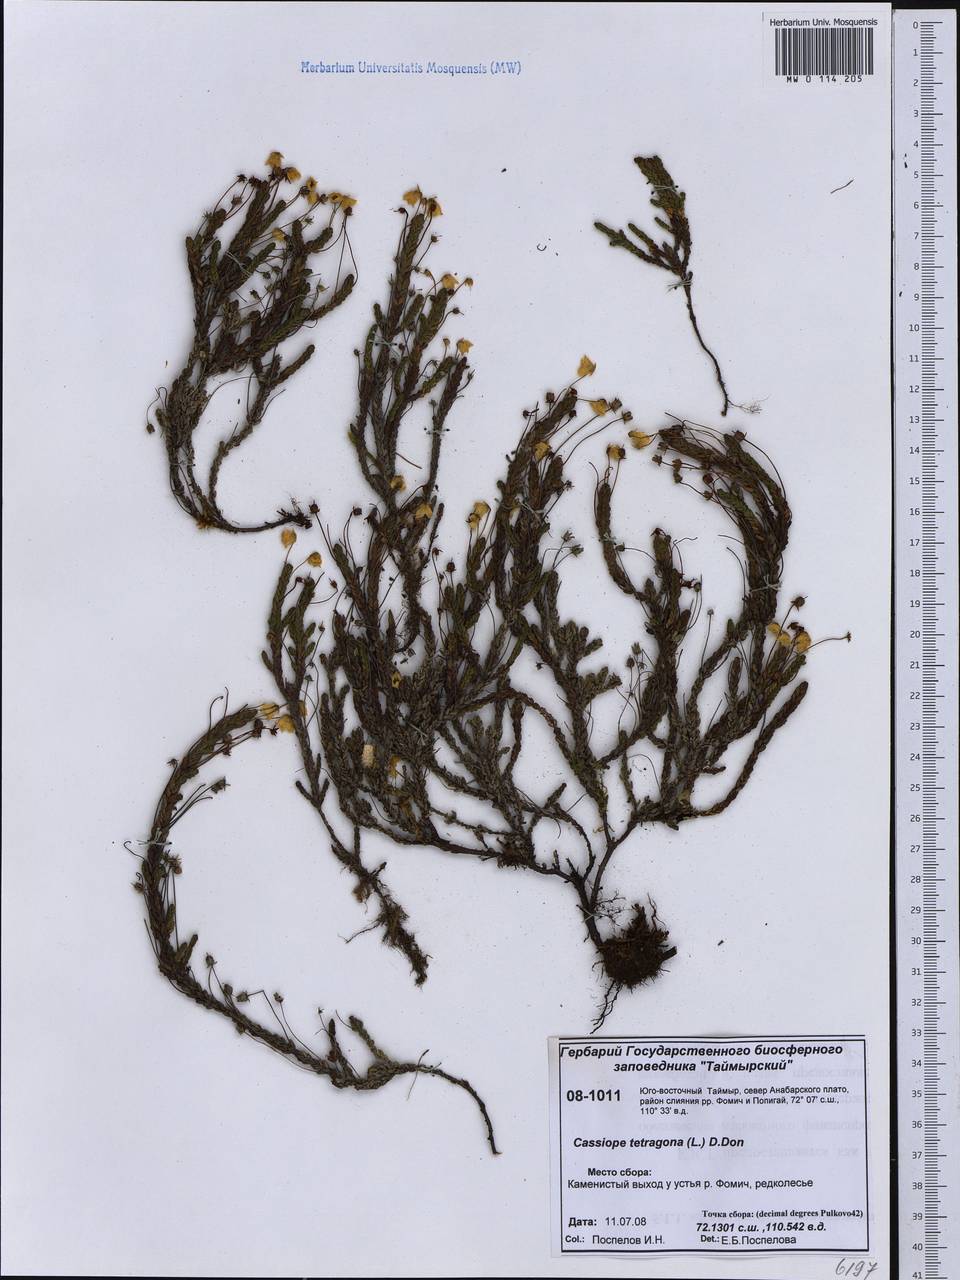 Cassiope tetragona (L.) D. Don, Siberia, Central Siberia (S3) (Russia)